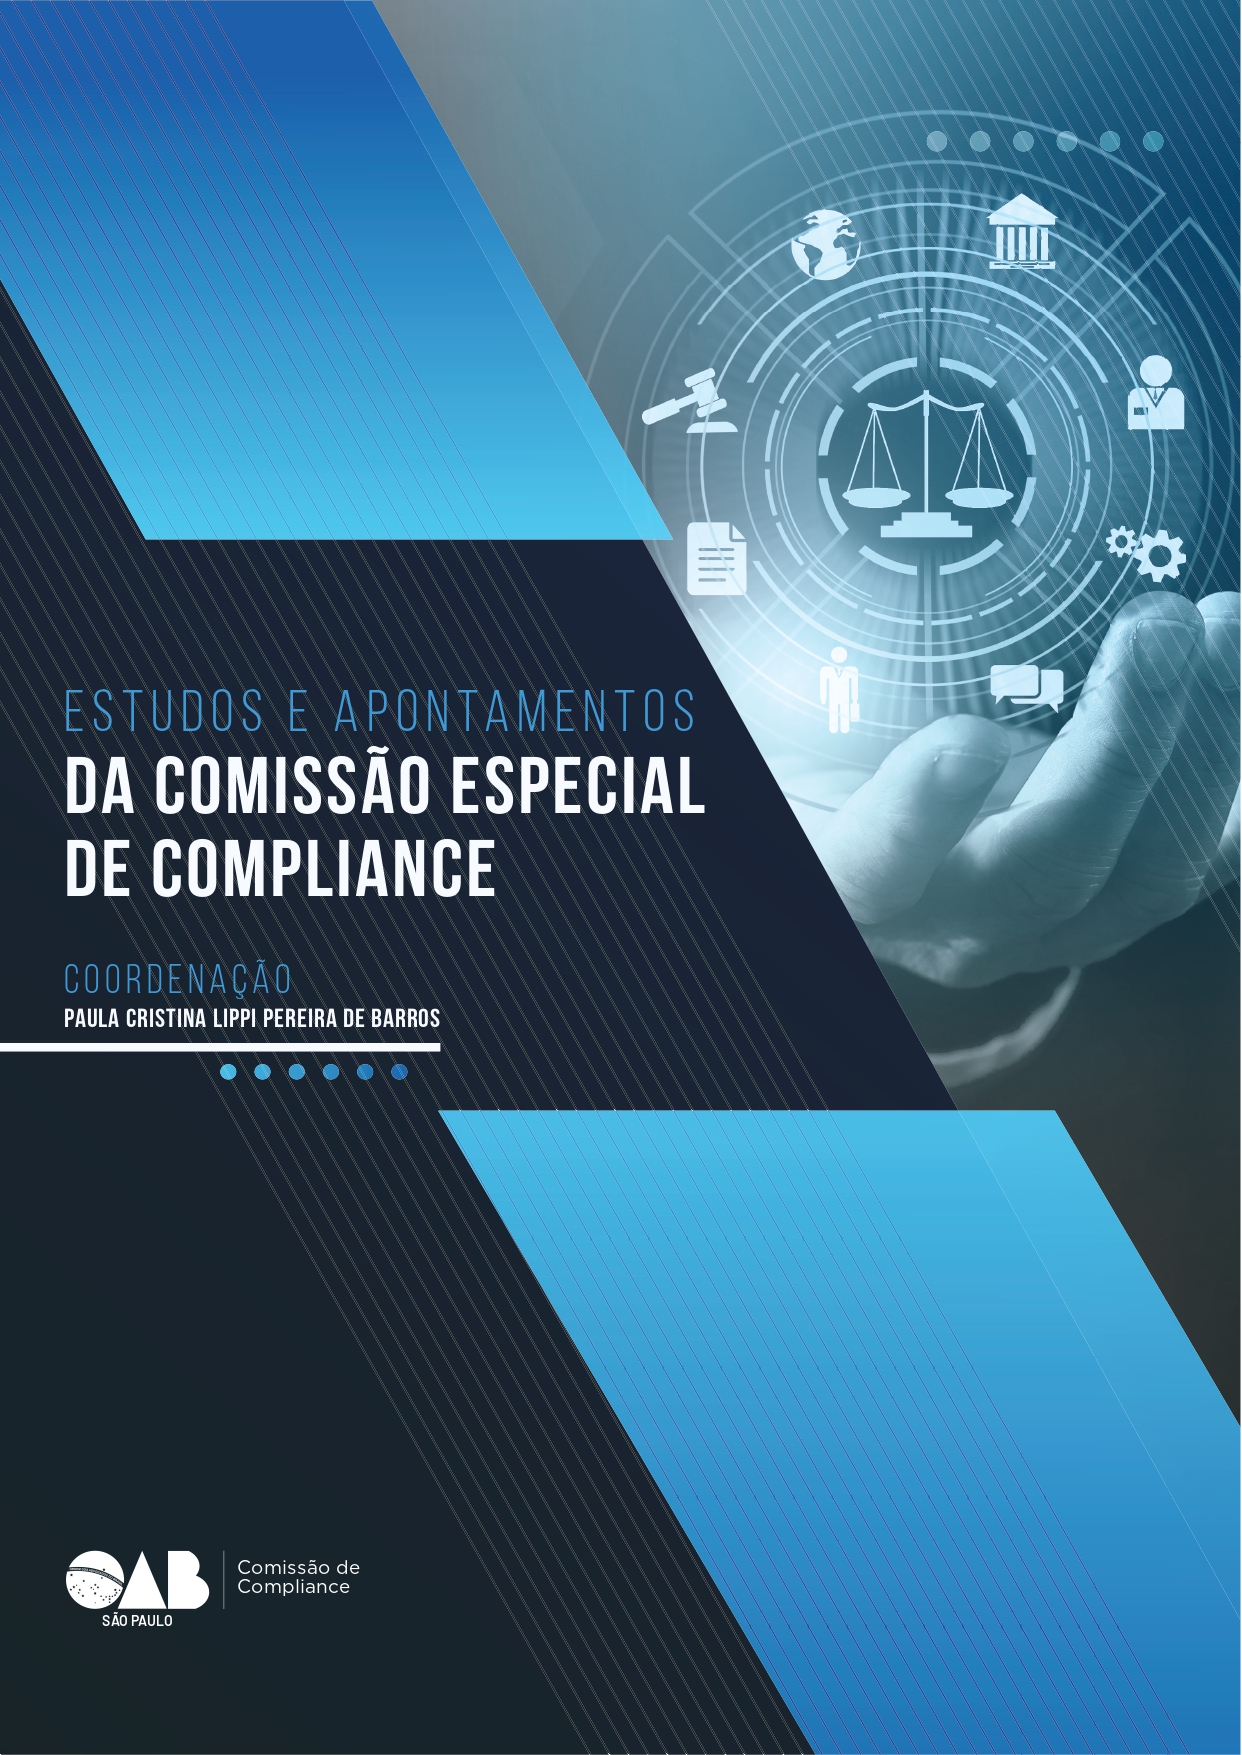 OAB SP reúne artigos sobre compliance em e-book gratuito